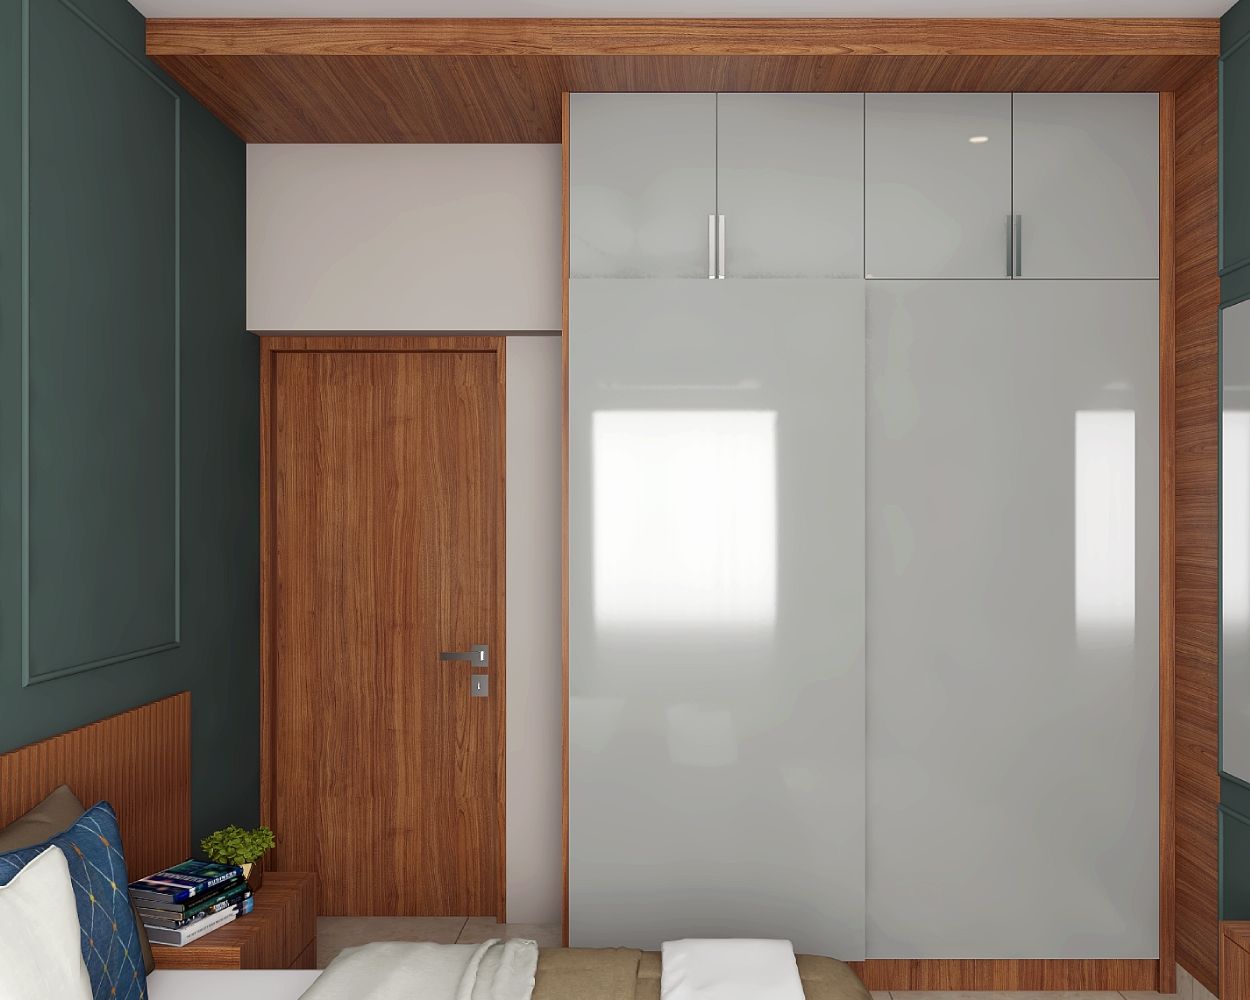 Contemporary 2-Door Dove Grey Sliding Door Wardrobe Design With Loft Storage